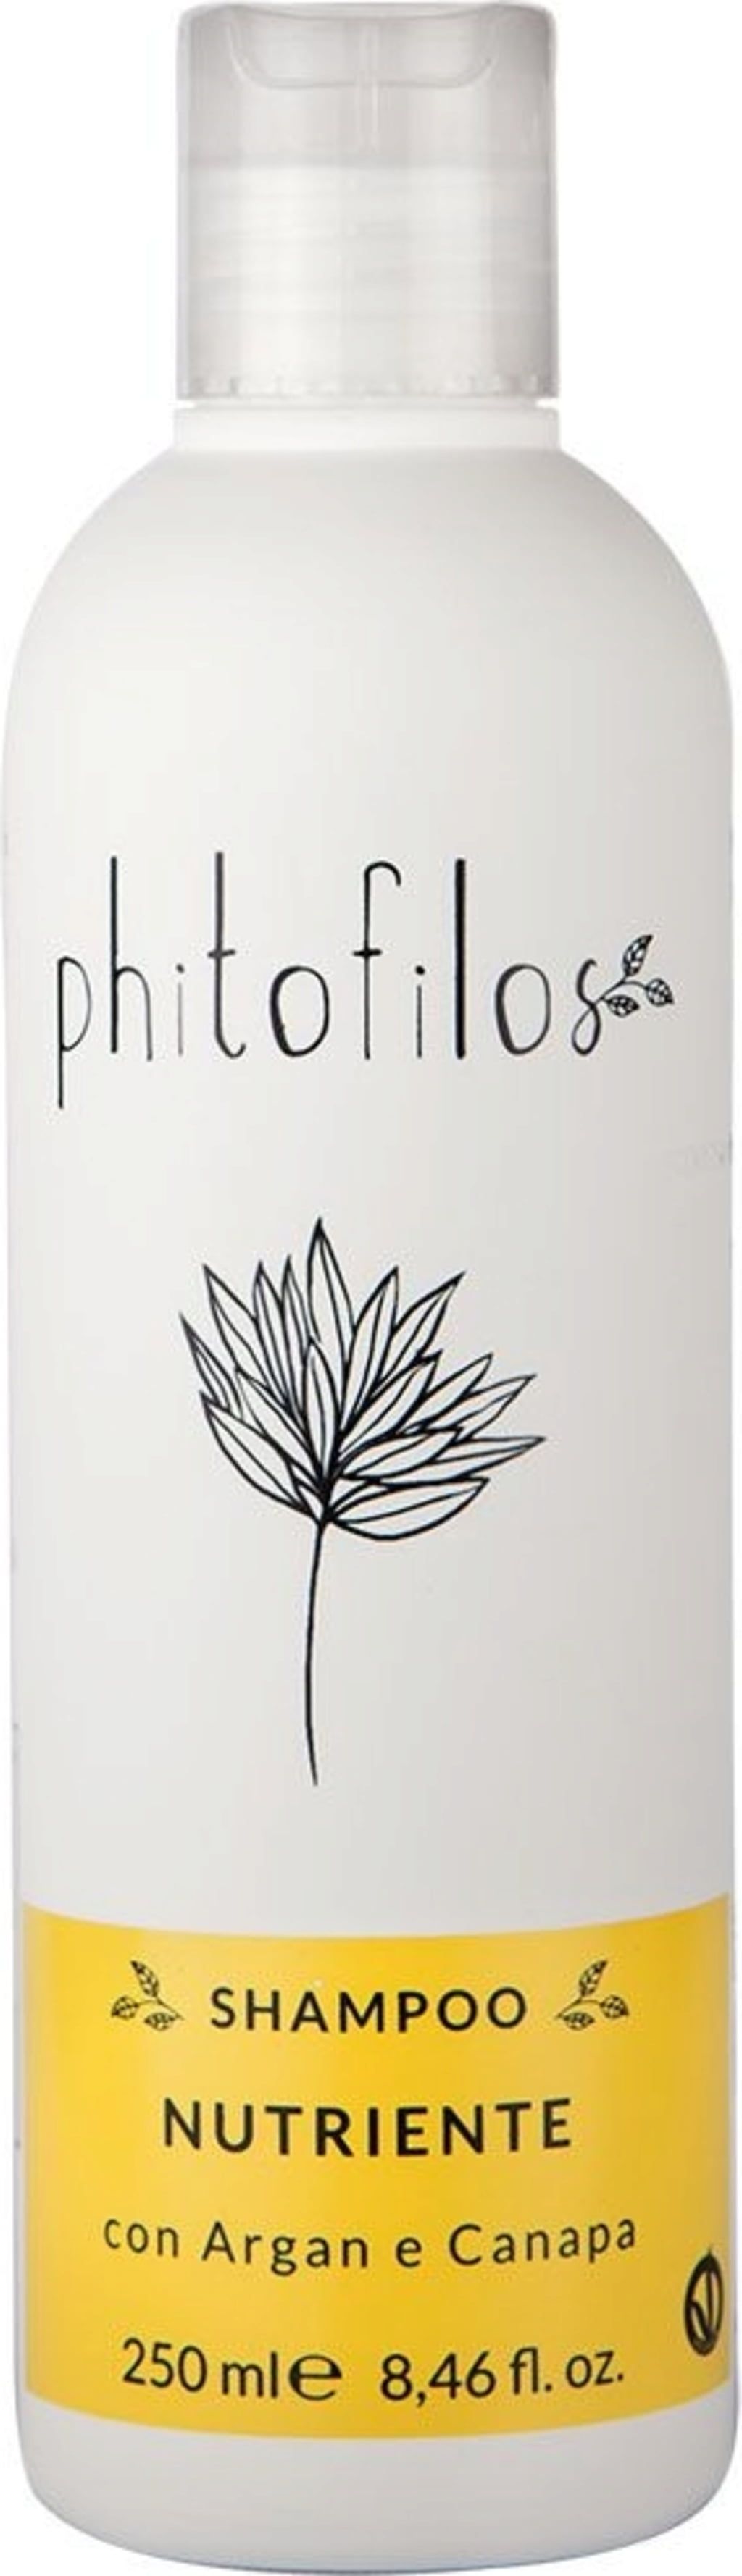 Phitofilos Sinergia Nährendes Shampoo - 250 ml